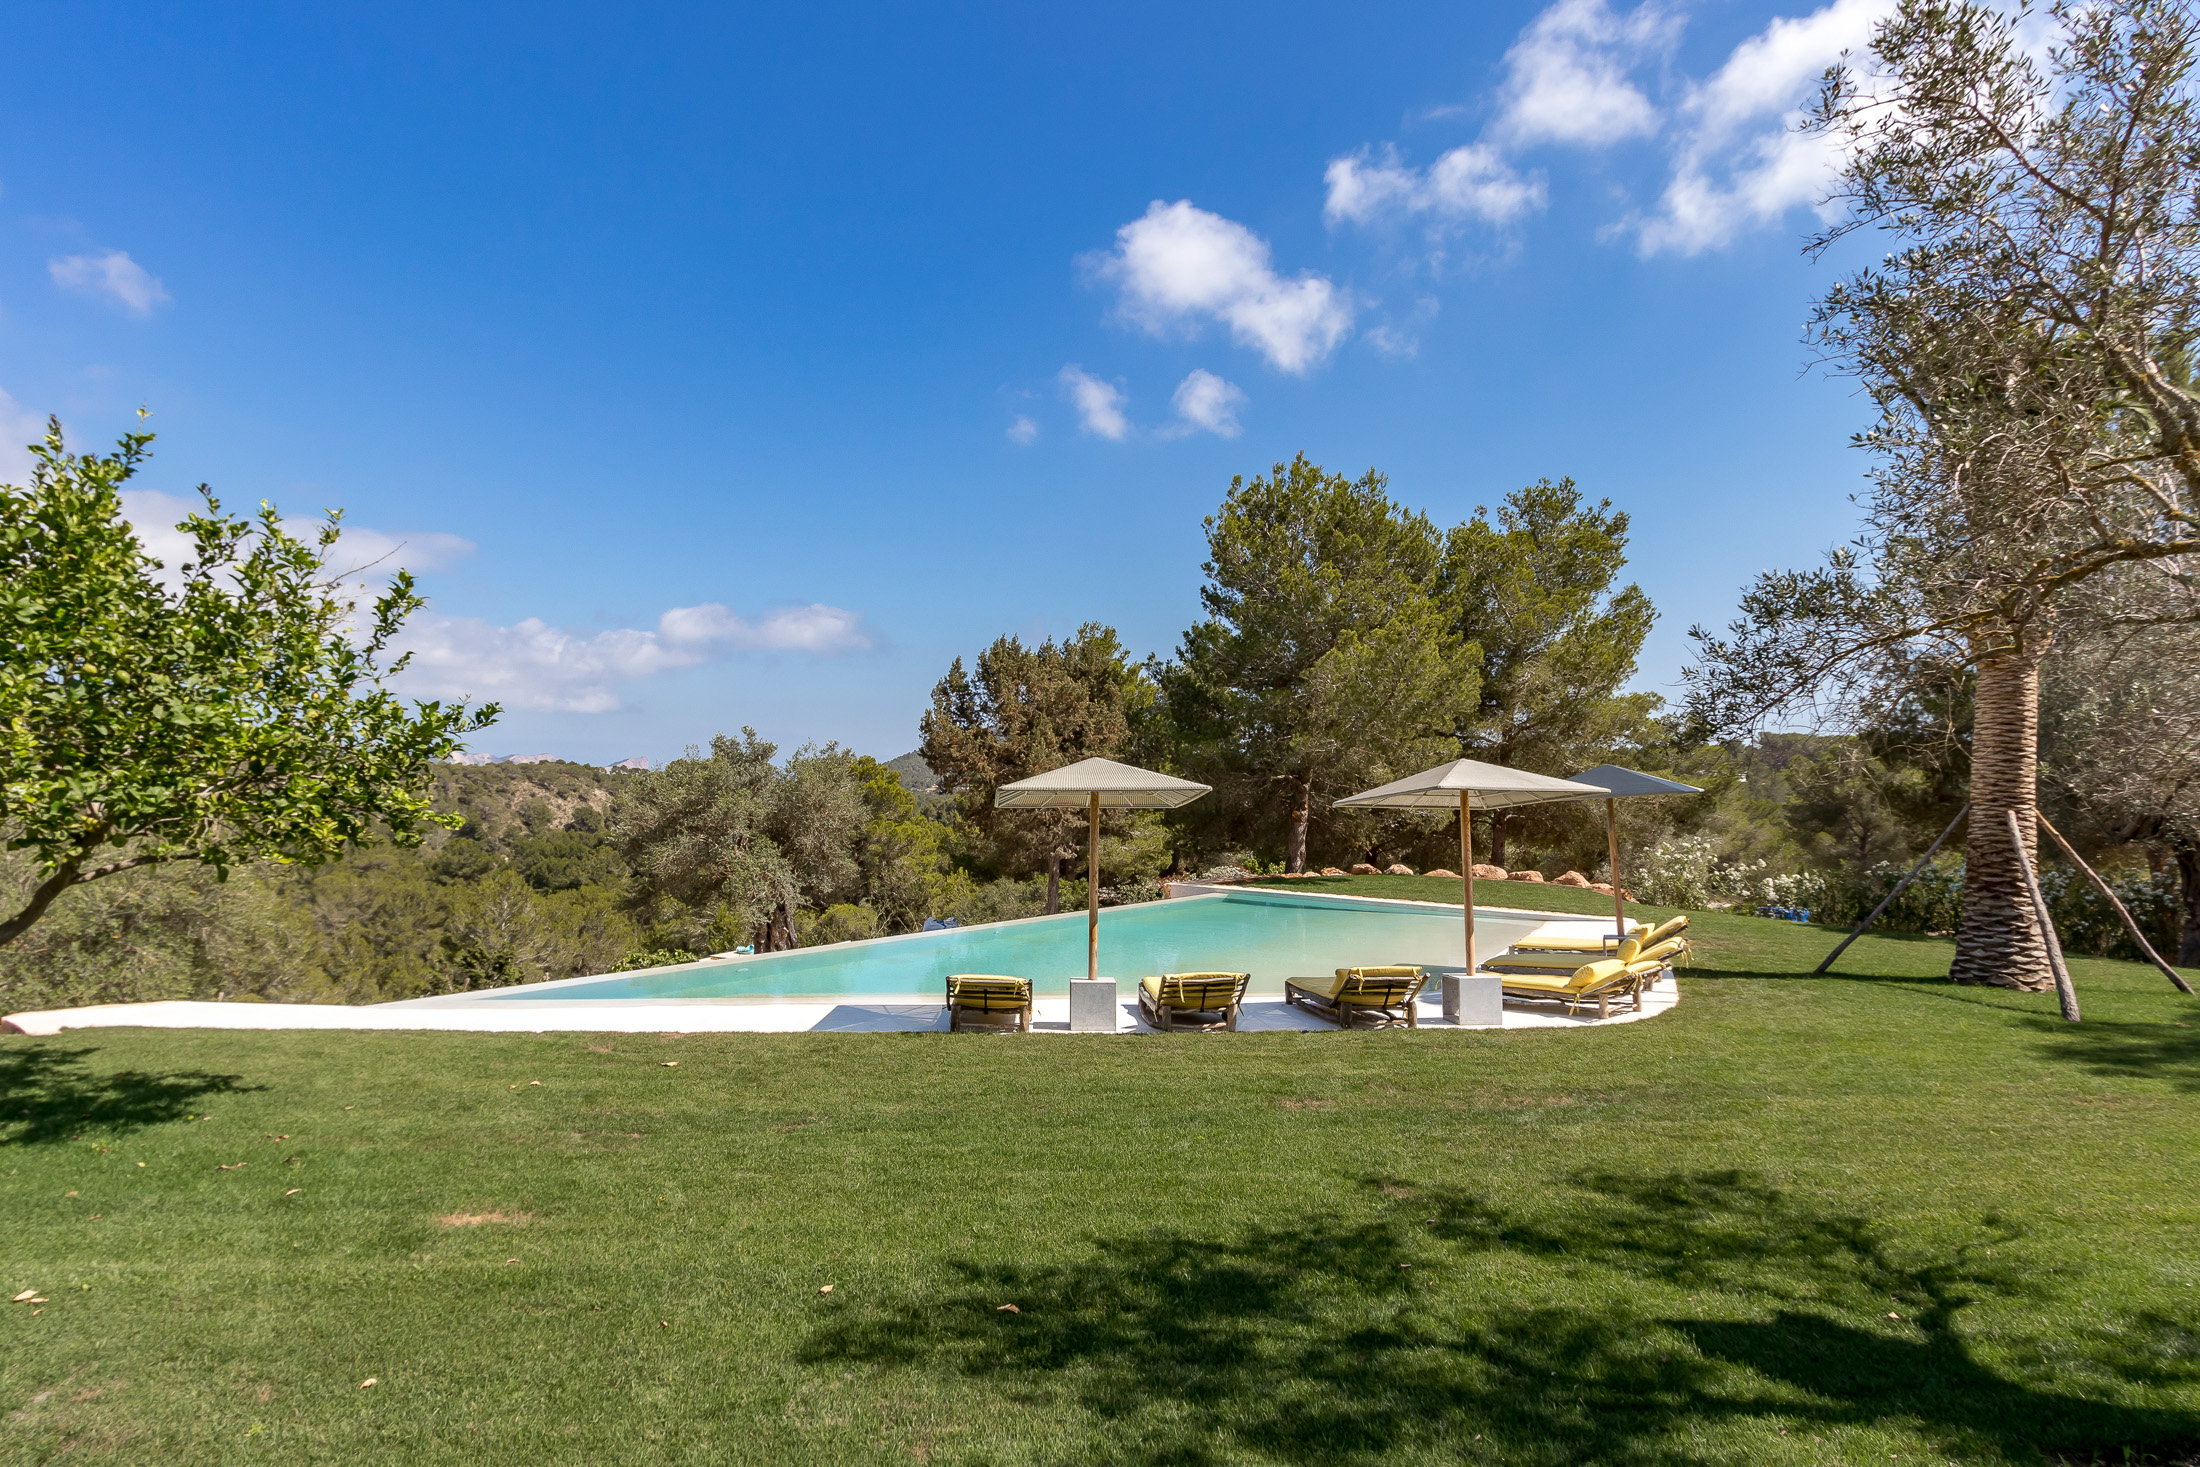 Miraflores-Villa de alquiler-Domus-Nova-Ibiza_0005